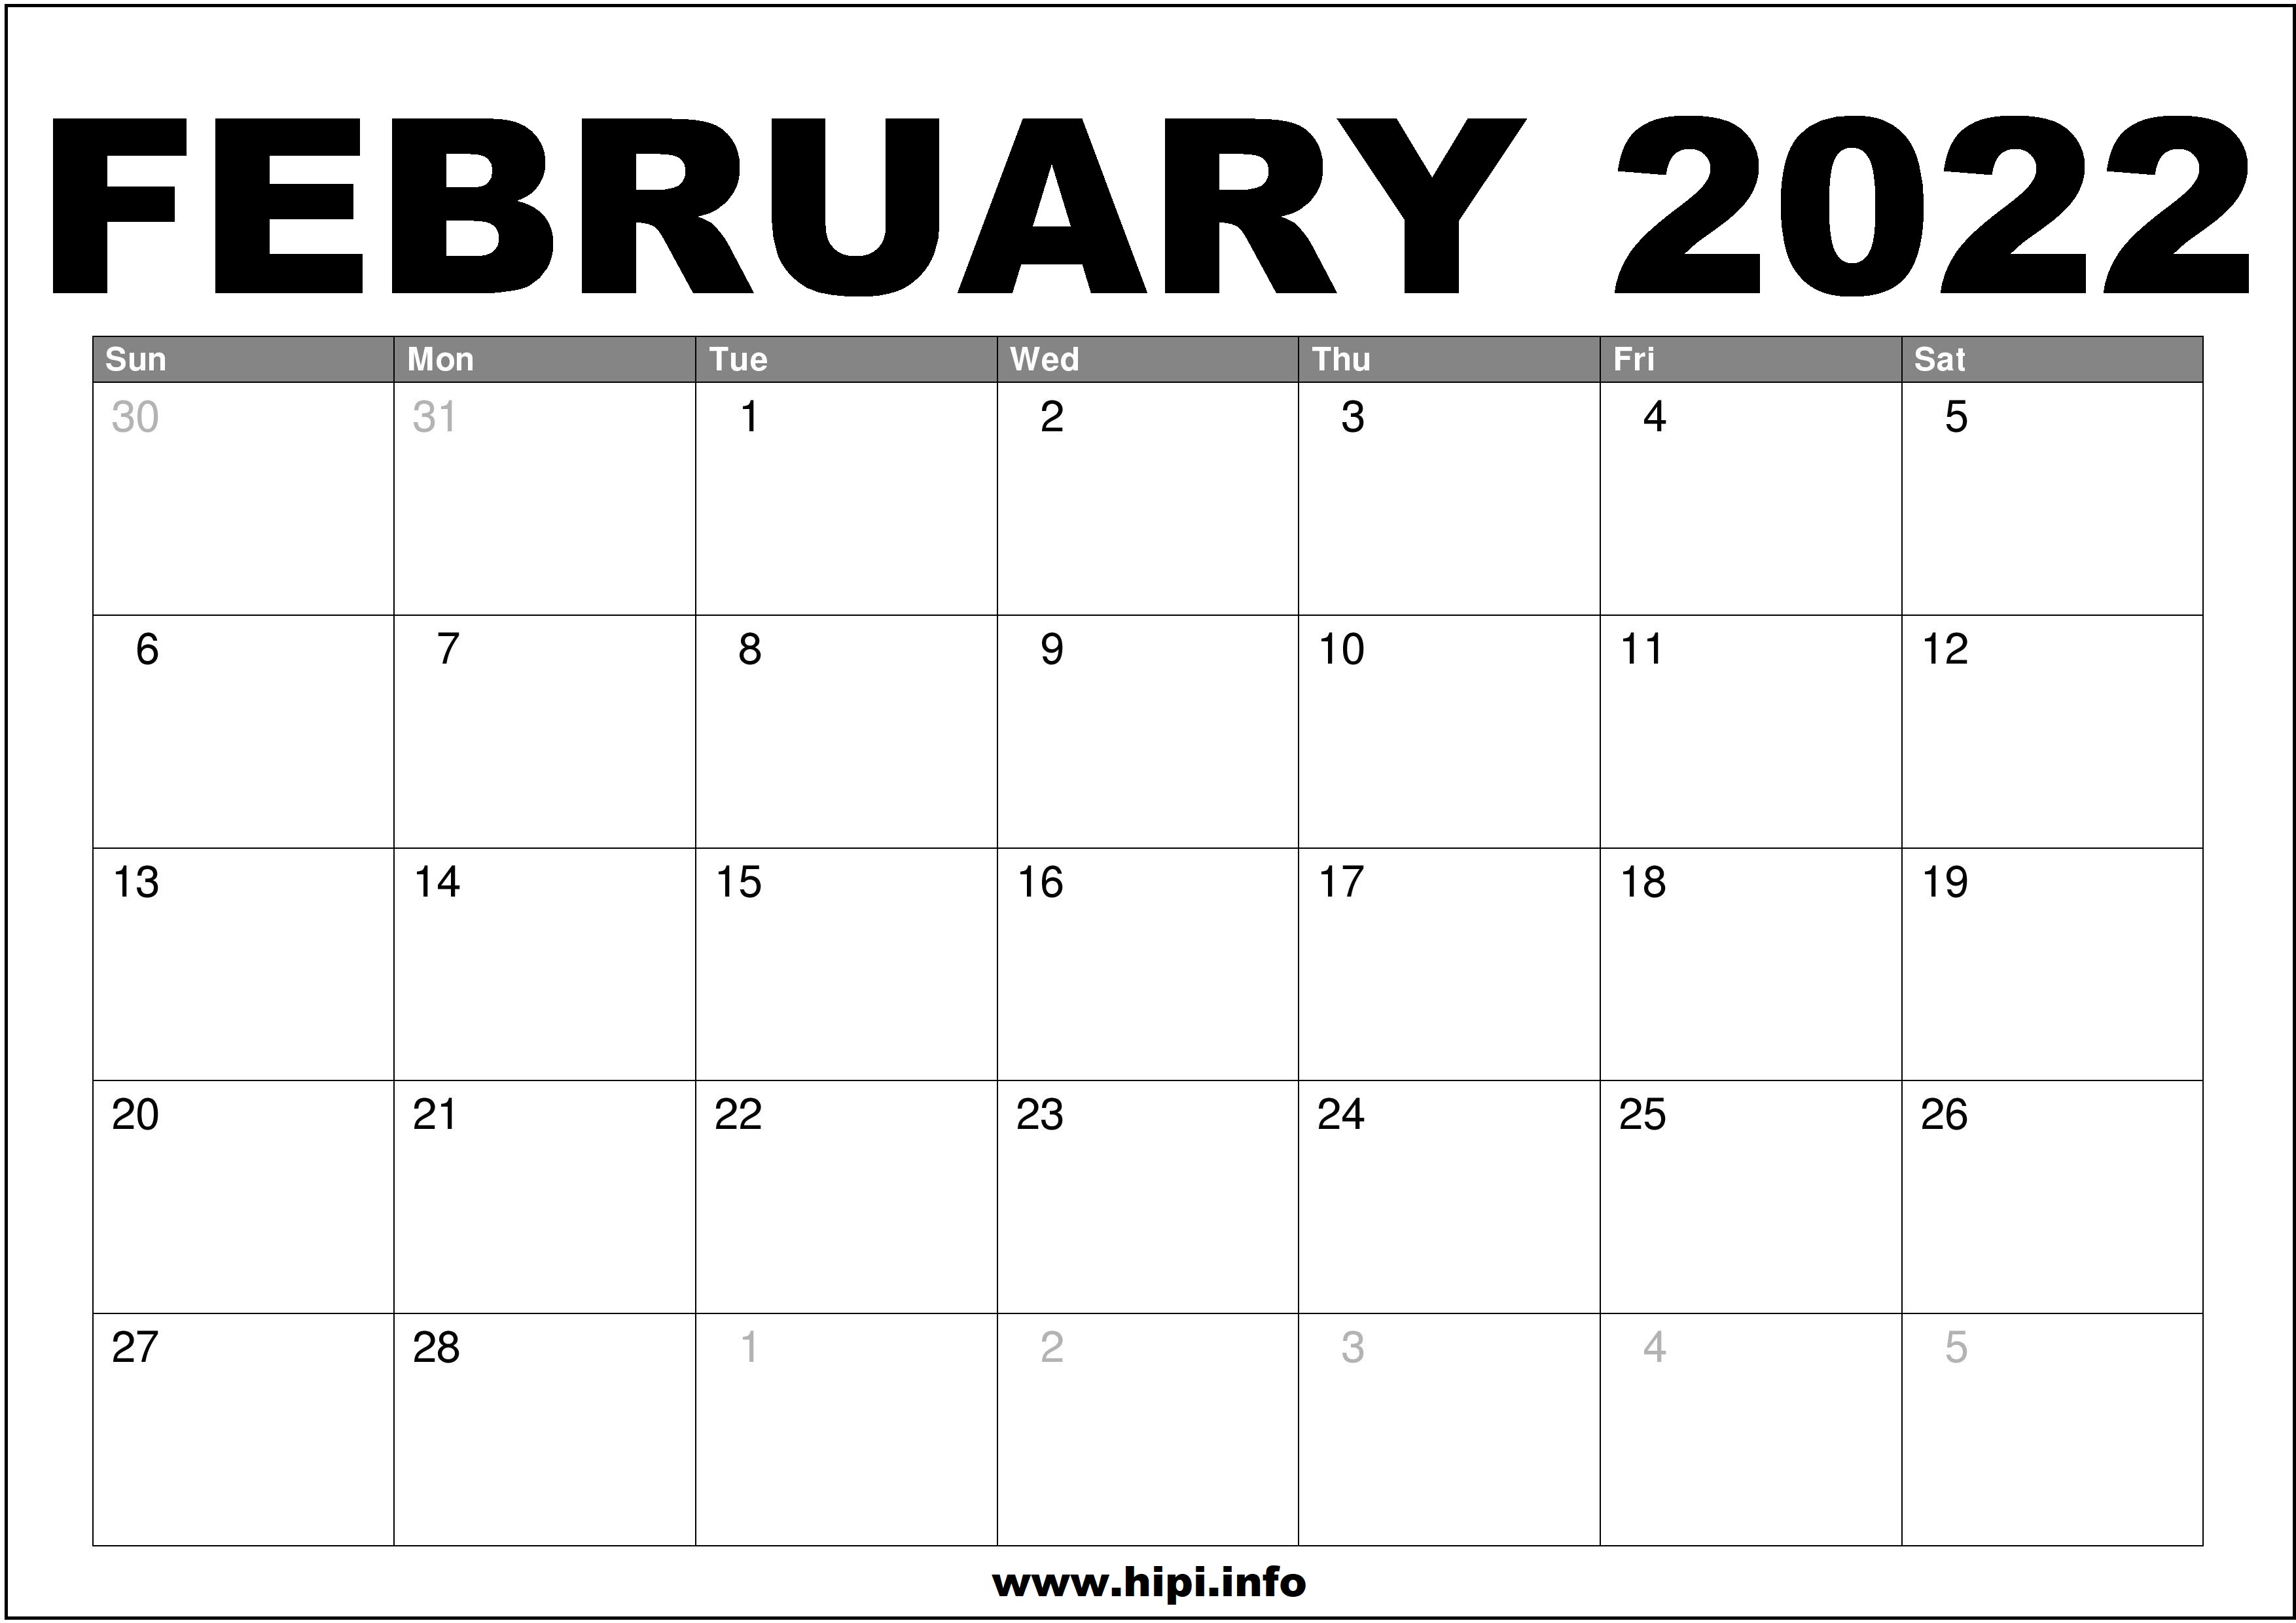 Month Of February 2022 Calendar February 2022 Calendar Printable Free - Hipi.info | Calendars Printable Free